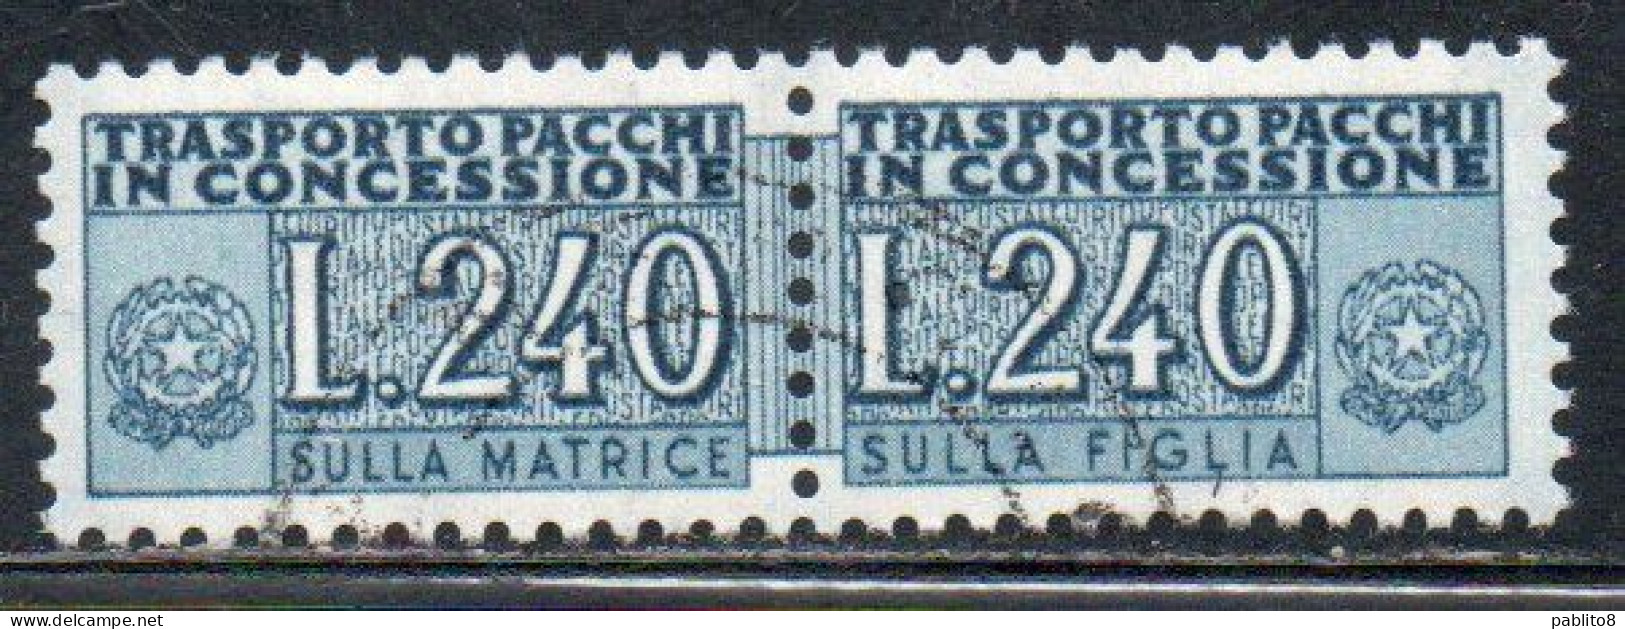 ITALIA REPUBBLICA ITALY REPUBLIC 1955 1981 PACCHI IN CONCESSIONE PARCEL POST STELLE STARS 1966 LIRE 240 USATO USED - Paquetes En Consigna